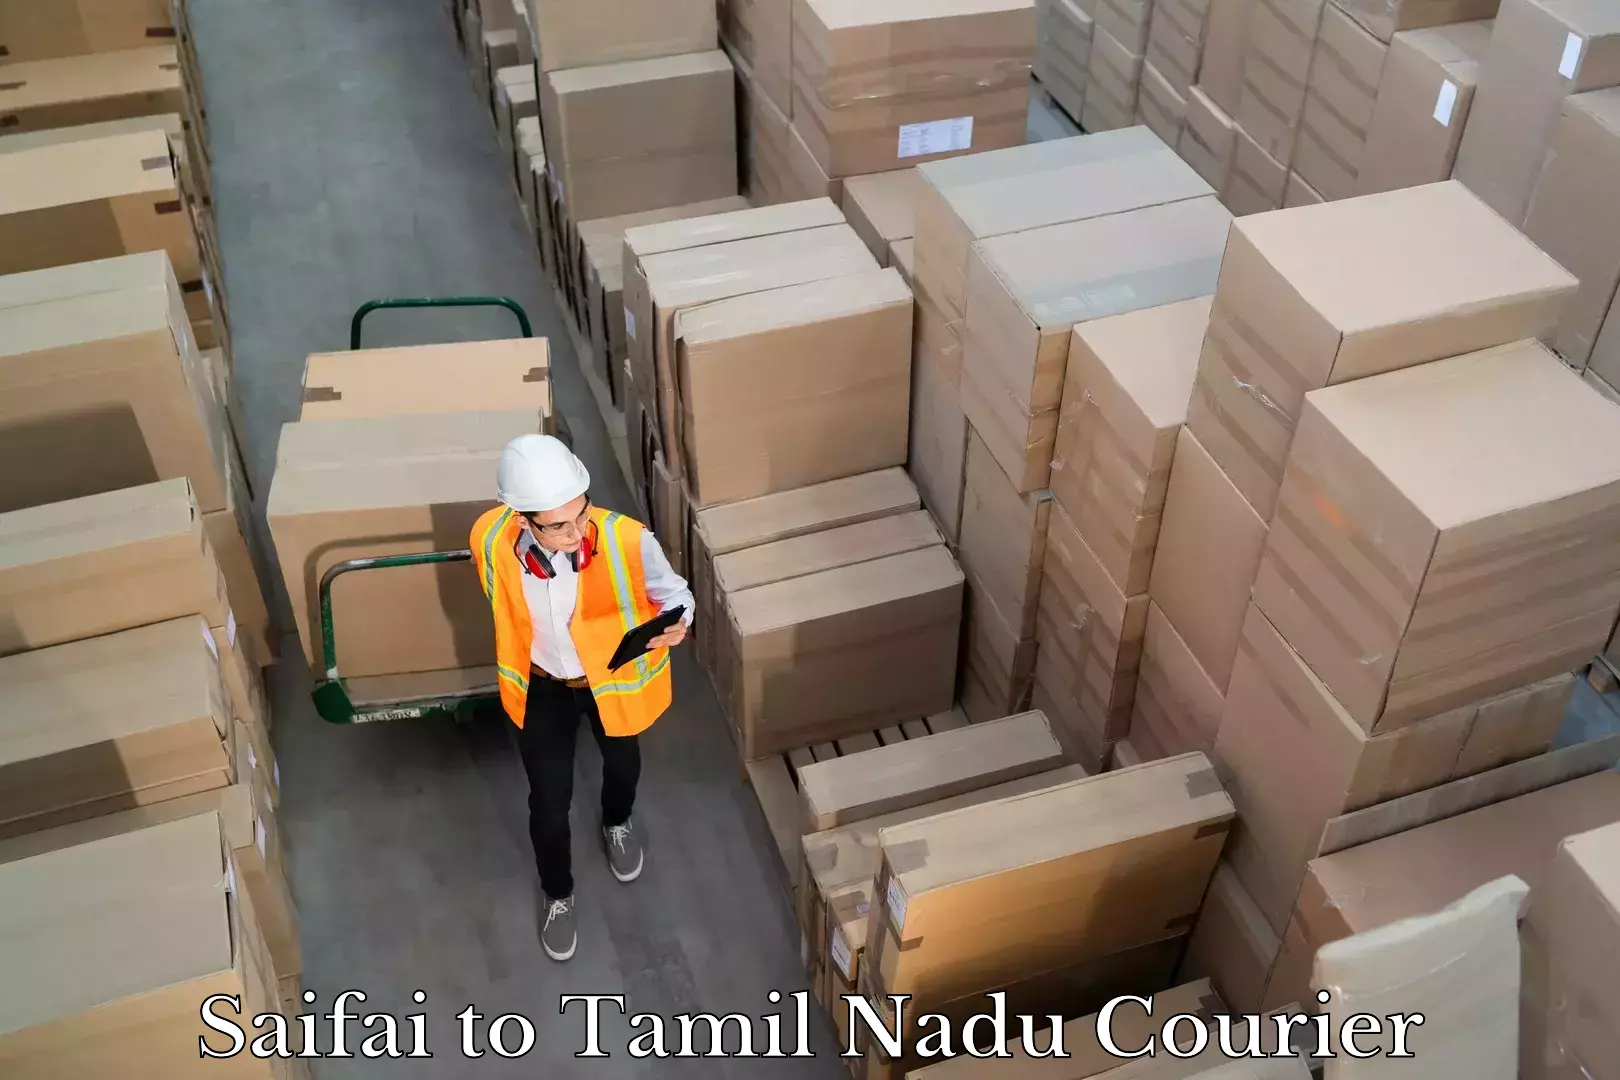 User-friendly courier app Saifai to Tamil Nadu